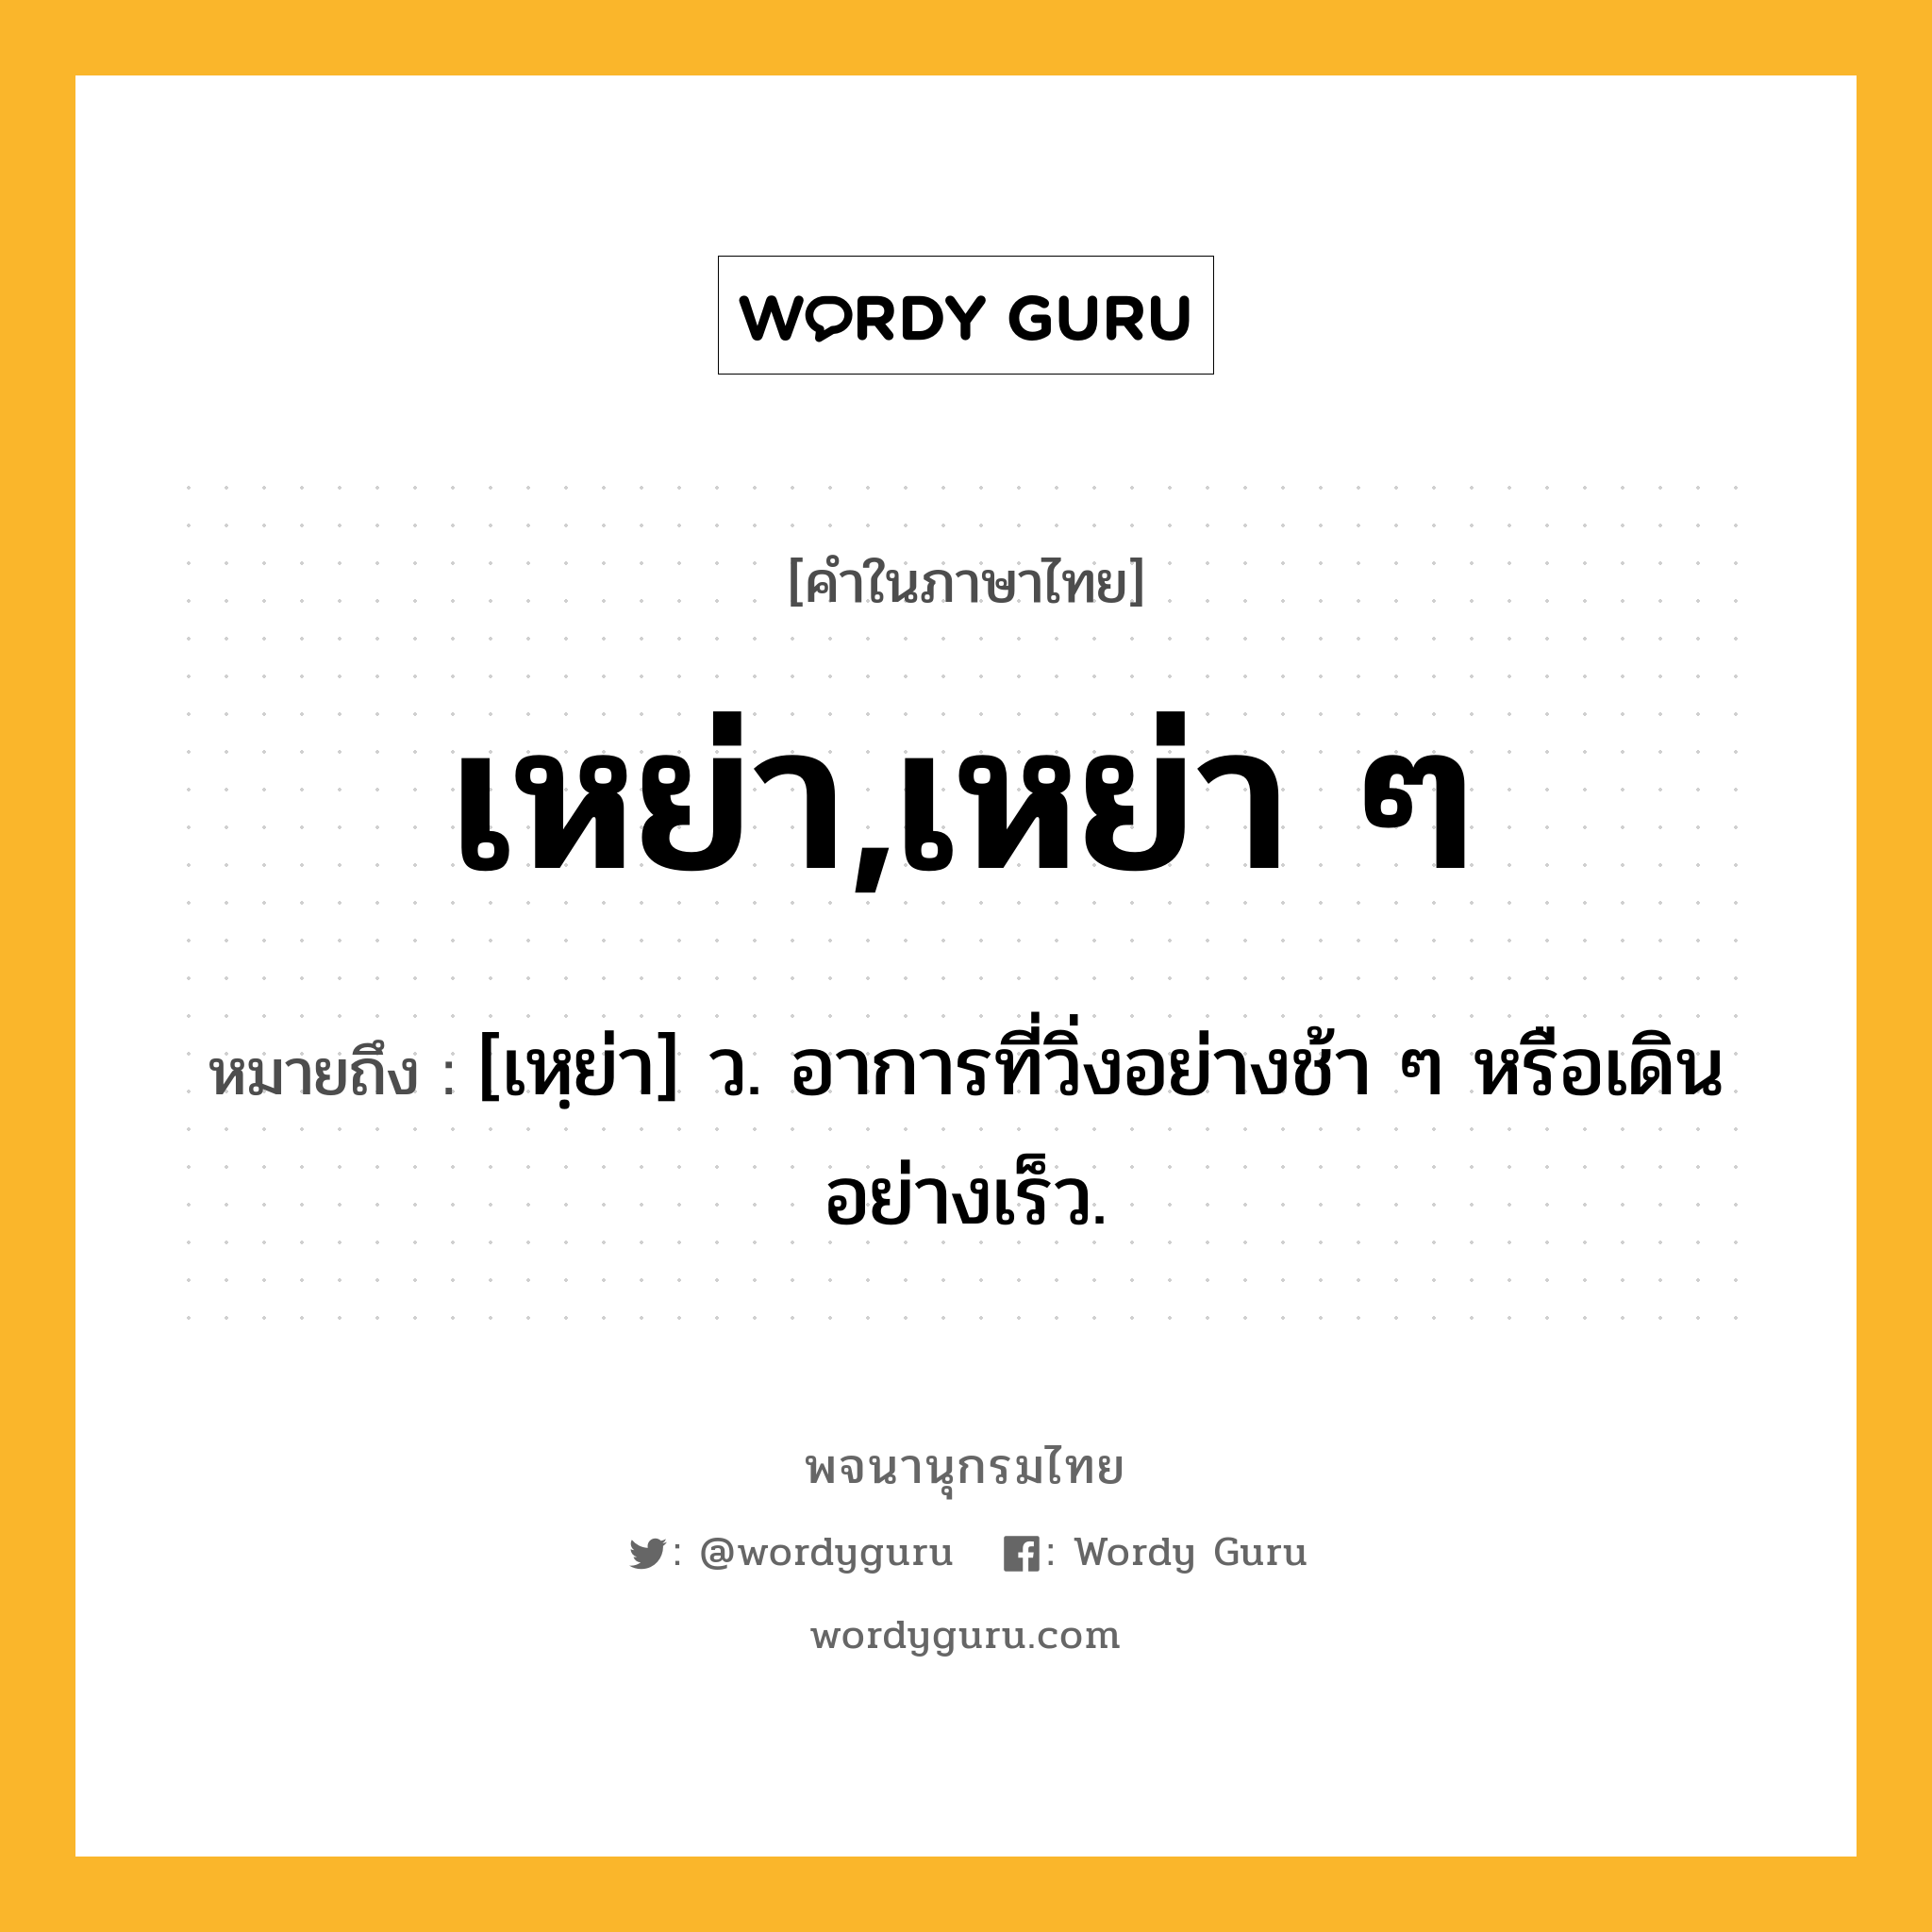 เหย่า,เหย่า ๆ ความหมาย หมายถึงอะไร?, คำในภาษาไทย เหย่า,เหย่า ๆ หมายถึง [เหฺย่า] ว. อาการที่วิ่งอย่างช้า ๆ หรือเดินอย่างเร็ว.